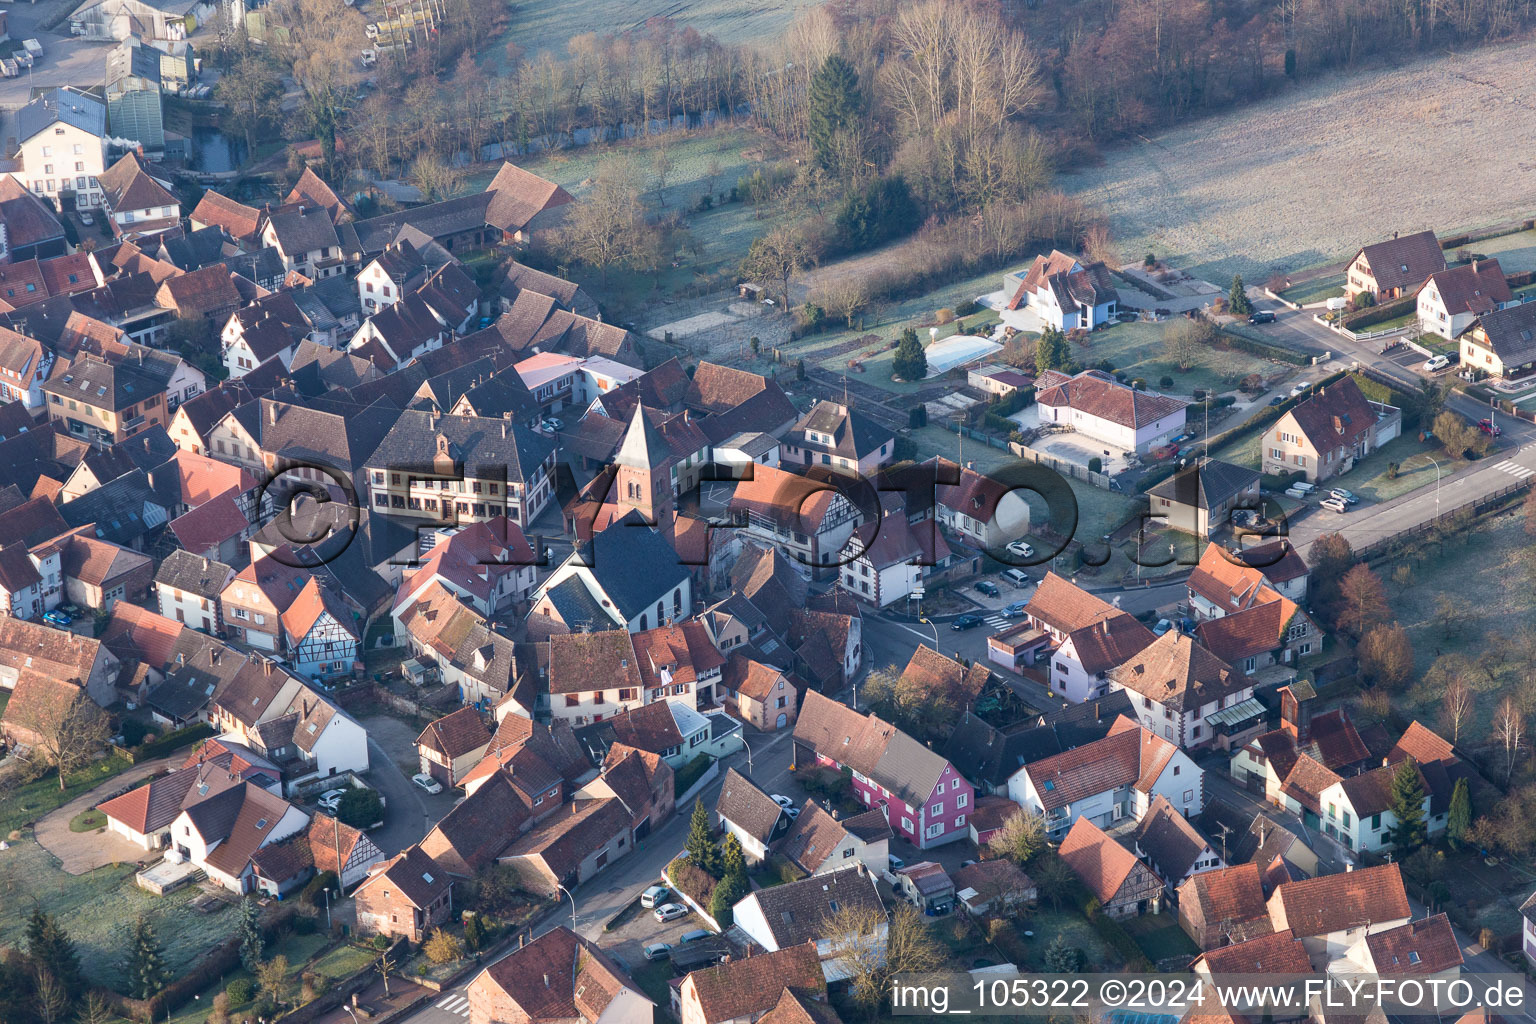 Vue aérienne de Église fortifiée luthérienne-protestante au centre du village entourée d'un anneau de maisons à Dossenheim-sur-Zinsel dans le département Bas Rhin, France